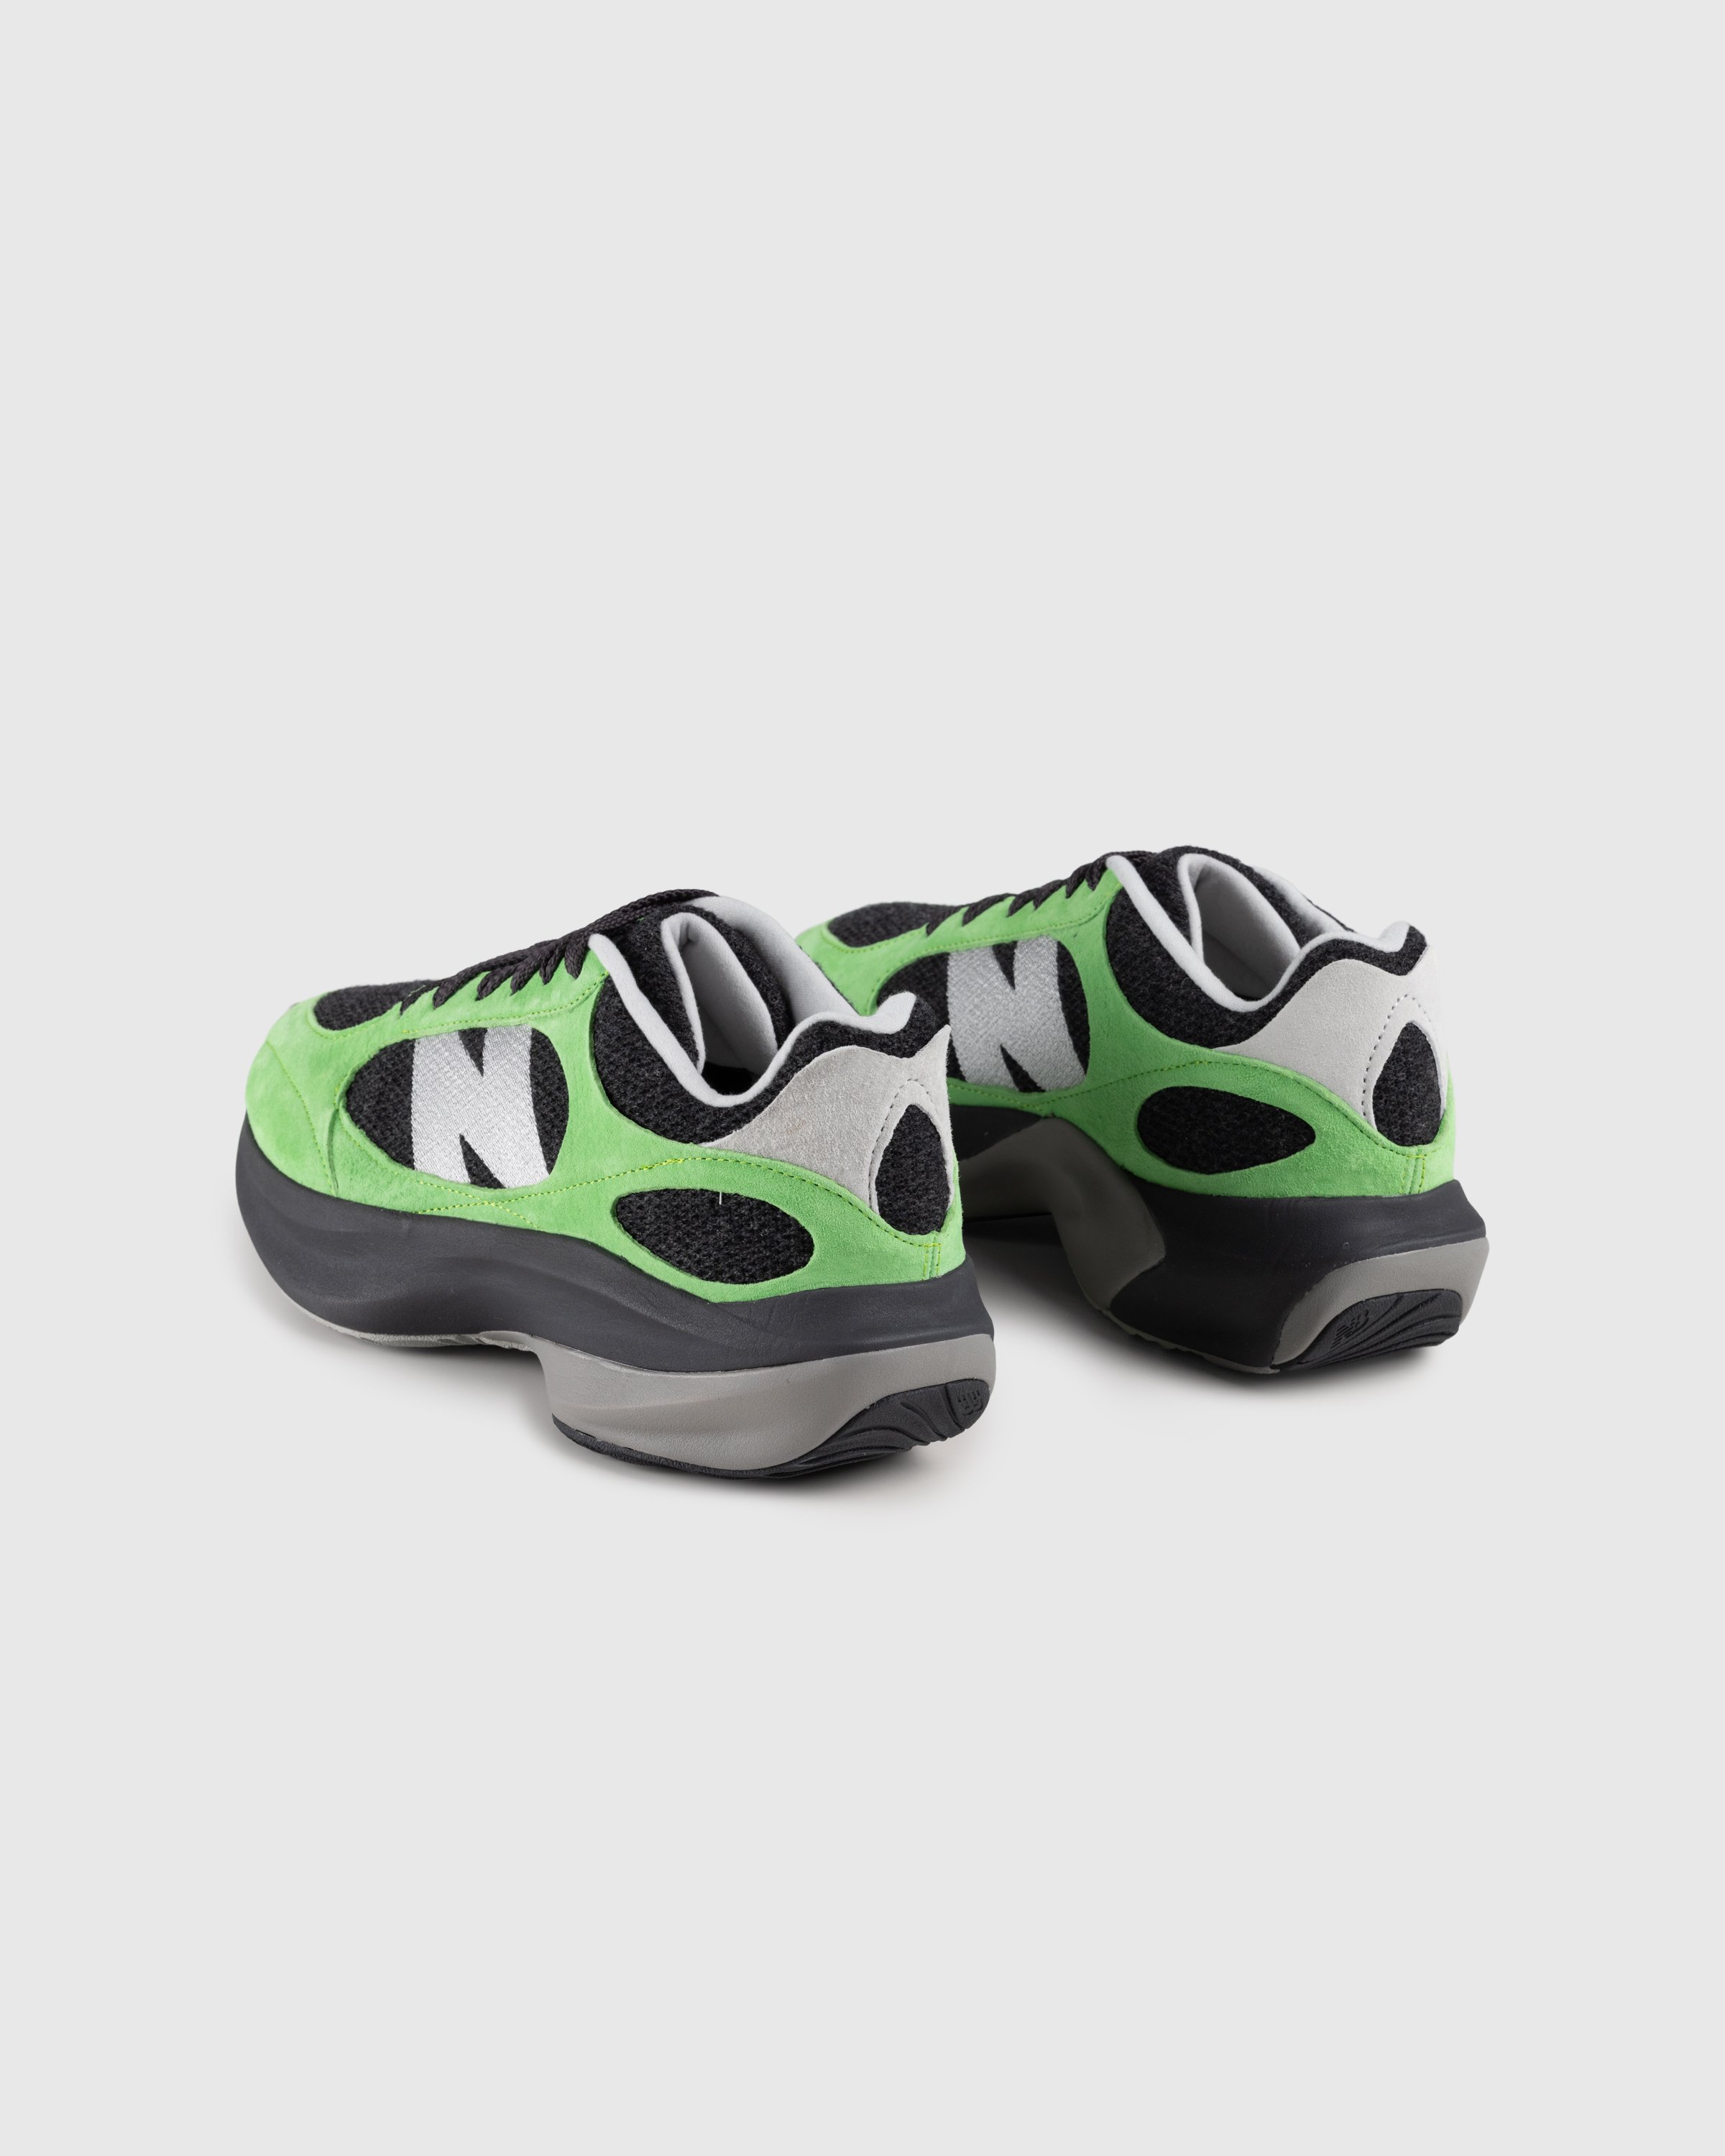 New Balance - WRPD Runner Green/Summer Fog - Footwear - Green - Image 4